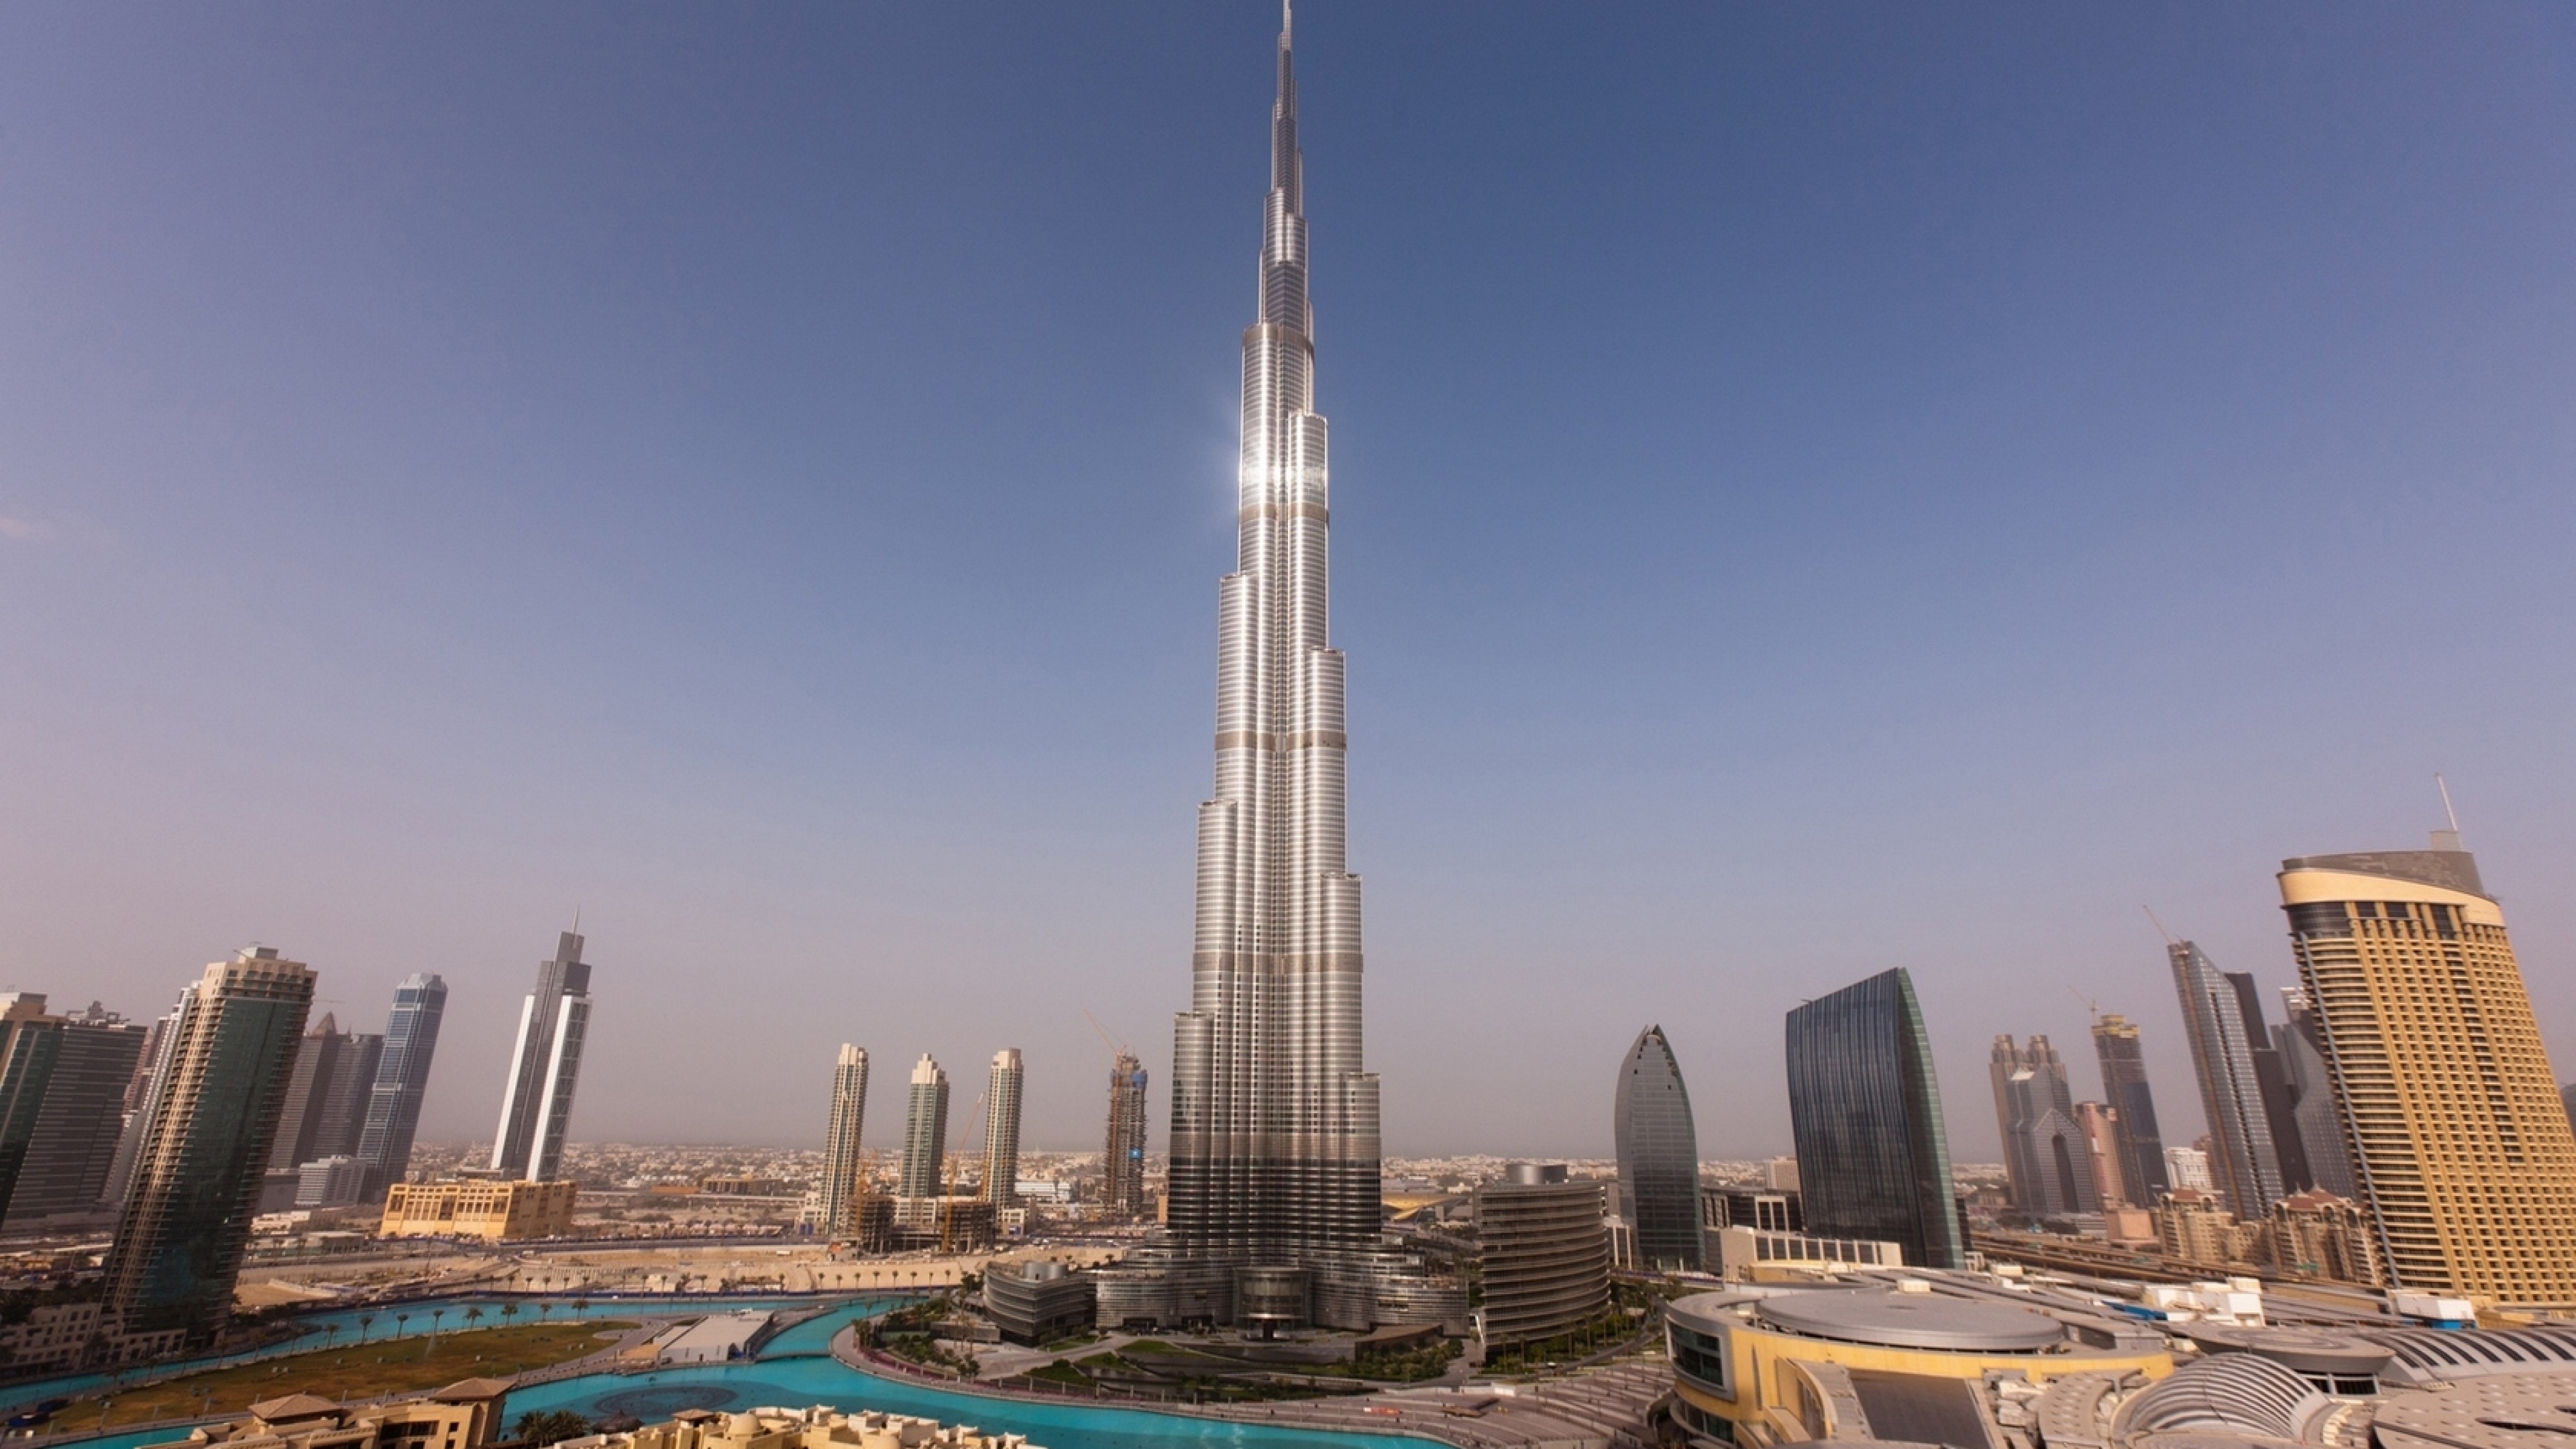 Download Wallpaper 3840x2160 Dubai Skyscrapers Towers Houses Burj